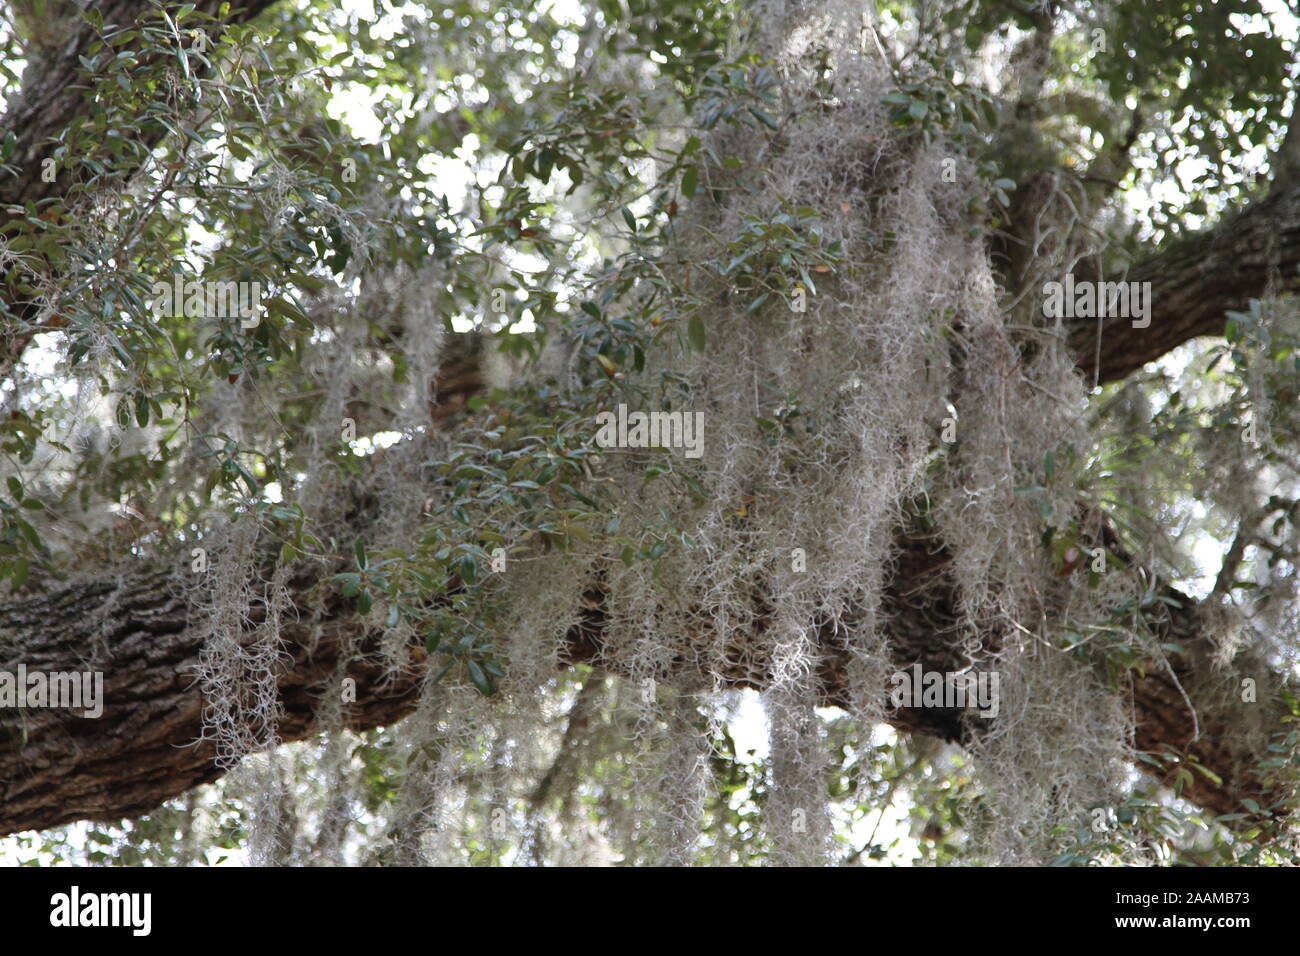 La mousse espagnole dans la mousse espagnole pendant de chênes centenaires en Floride Banque D'Images